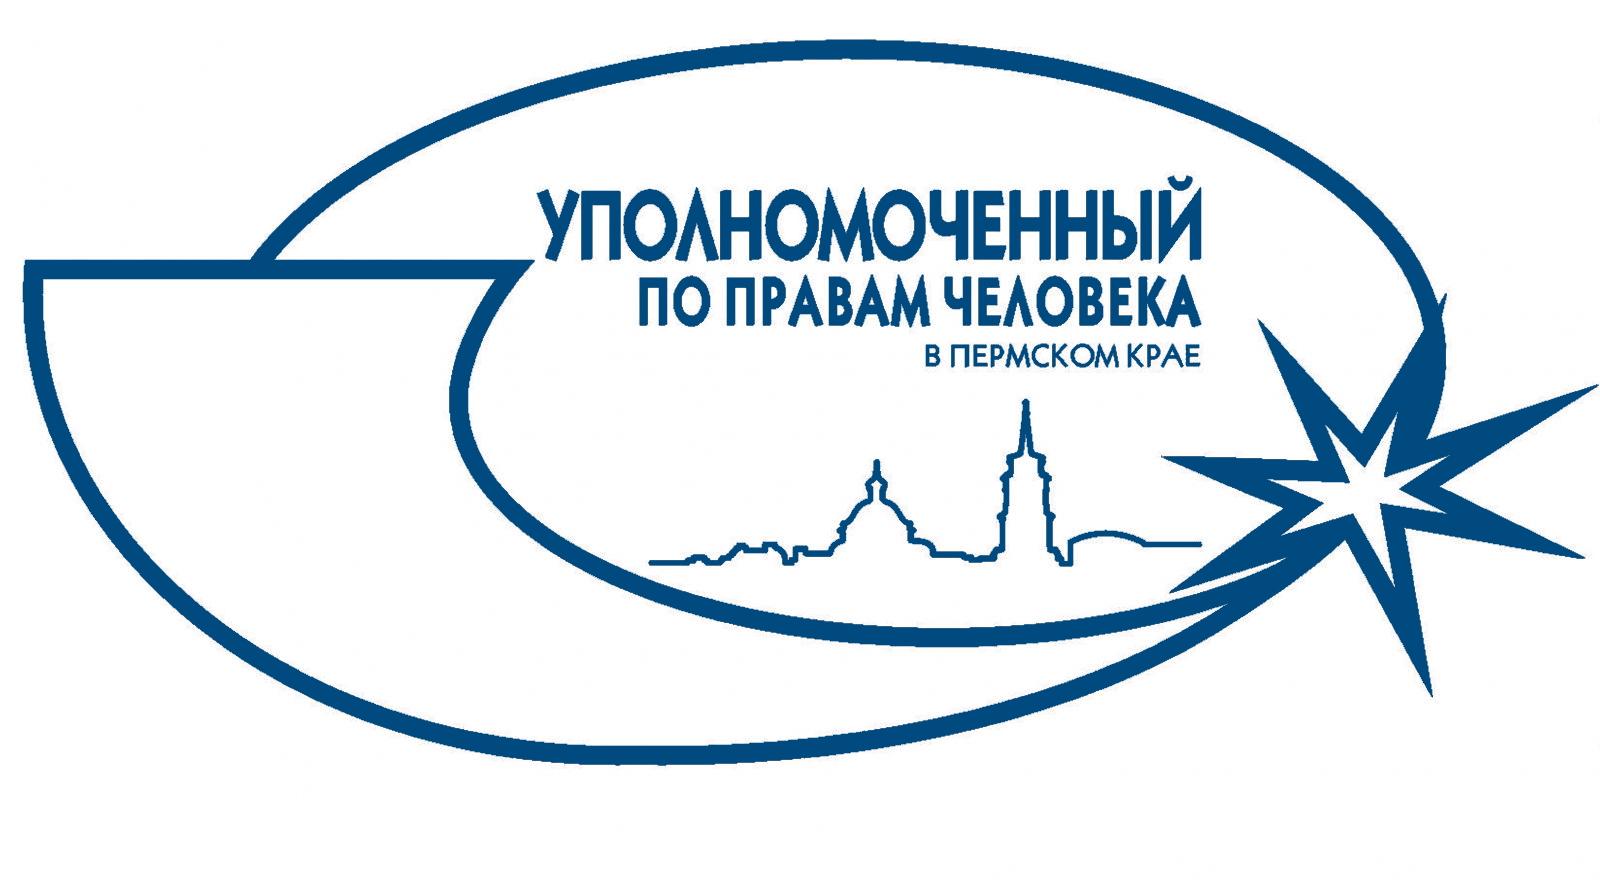 Уполномоченный по правам человека в Пермском крае выступил на заседании Совета по защите прав граждан при Уральской транспортной прокуратуре.